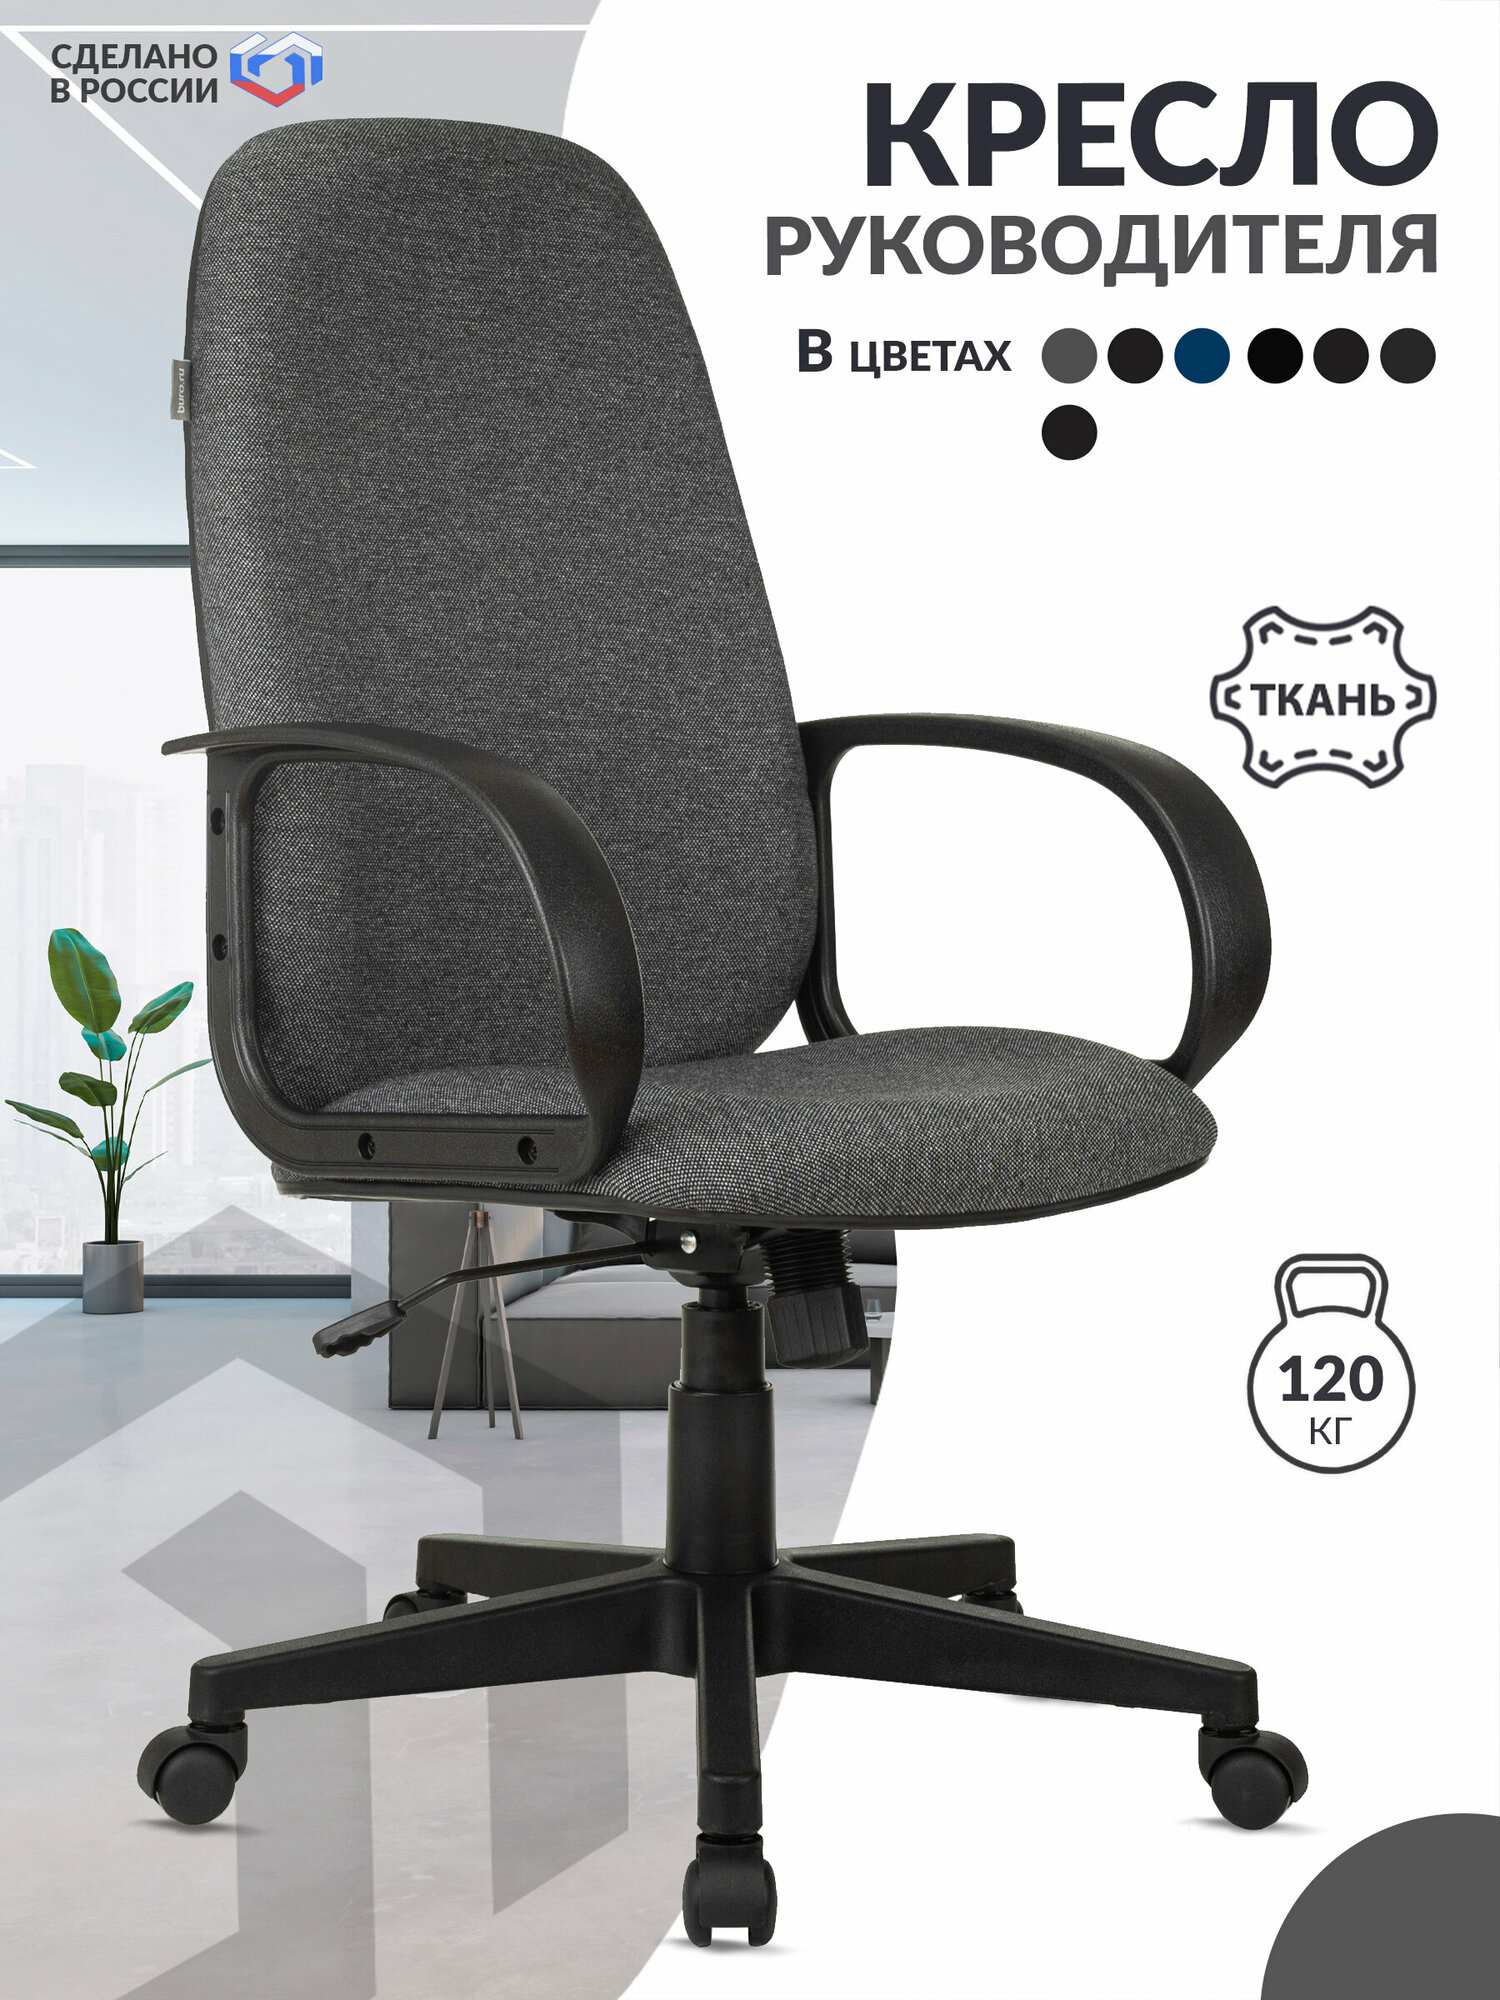 Кресло руководителя CH-808AXSN серый 3C1 крестовина пластик / Компьютерное кресло для директора, начальника, менеджера